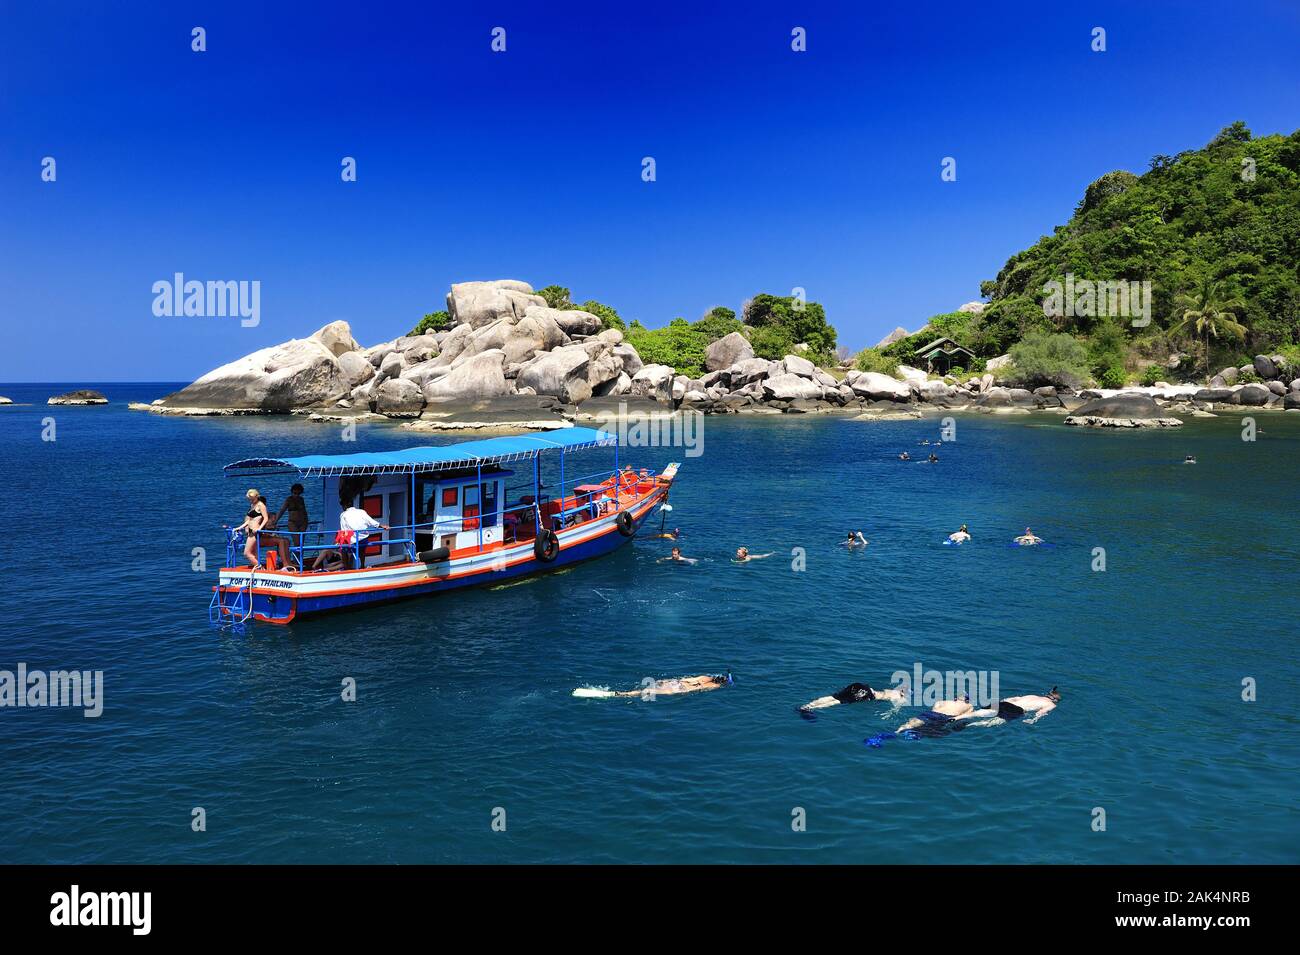 Insel Koh Tao: Taucher in der Hin Wong Bay, Tailandia | Utilizzo di tutto il mondo Foto Stock